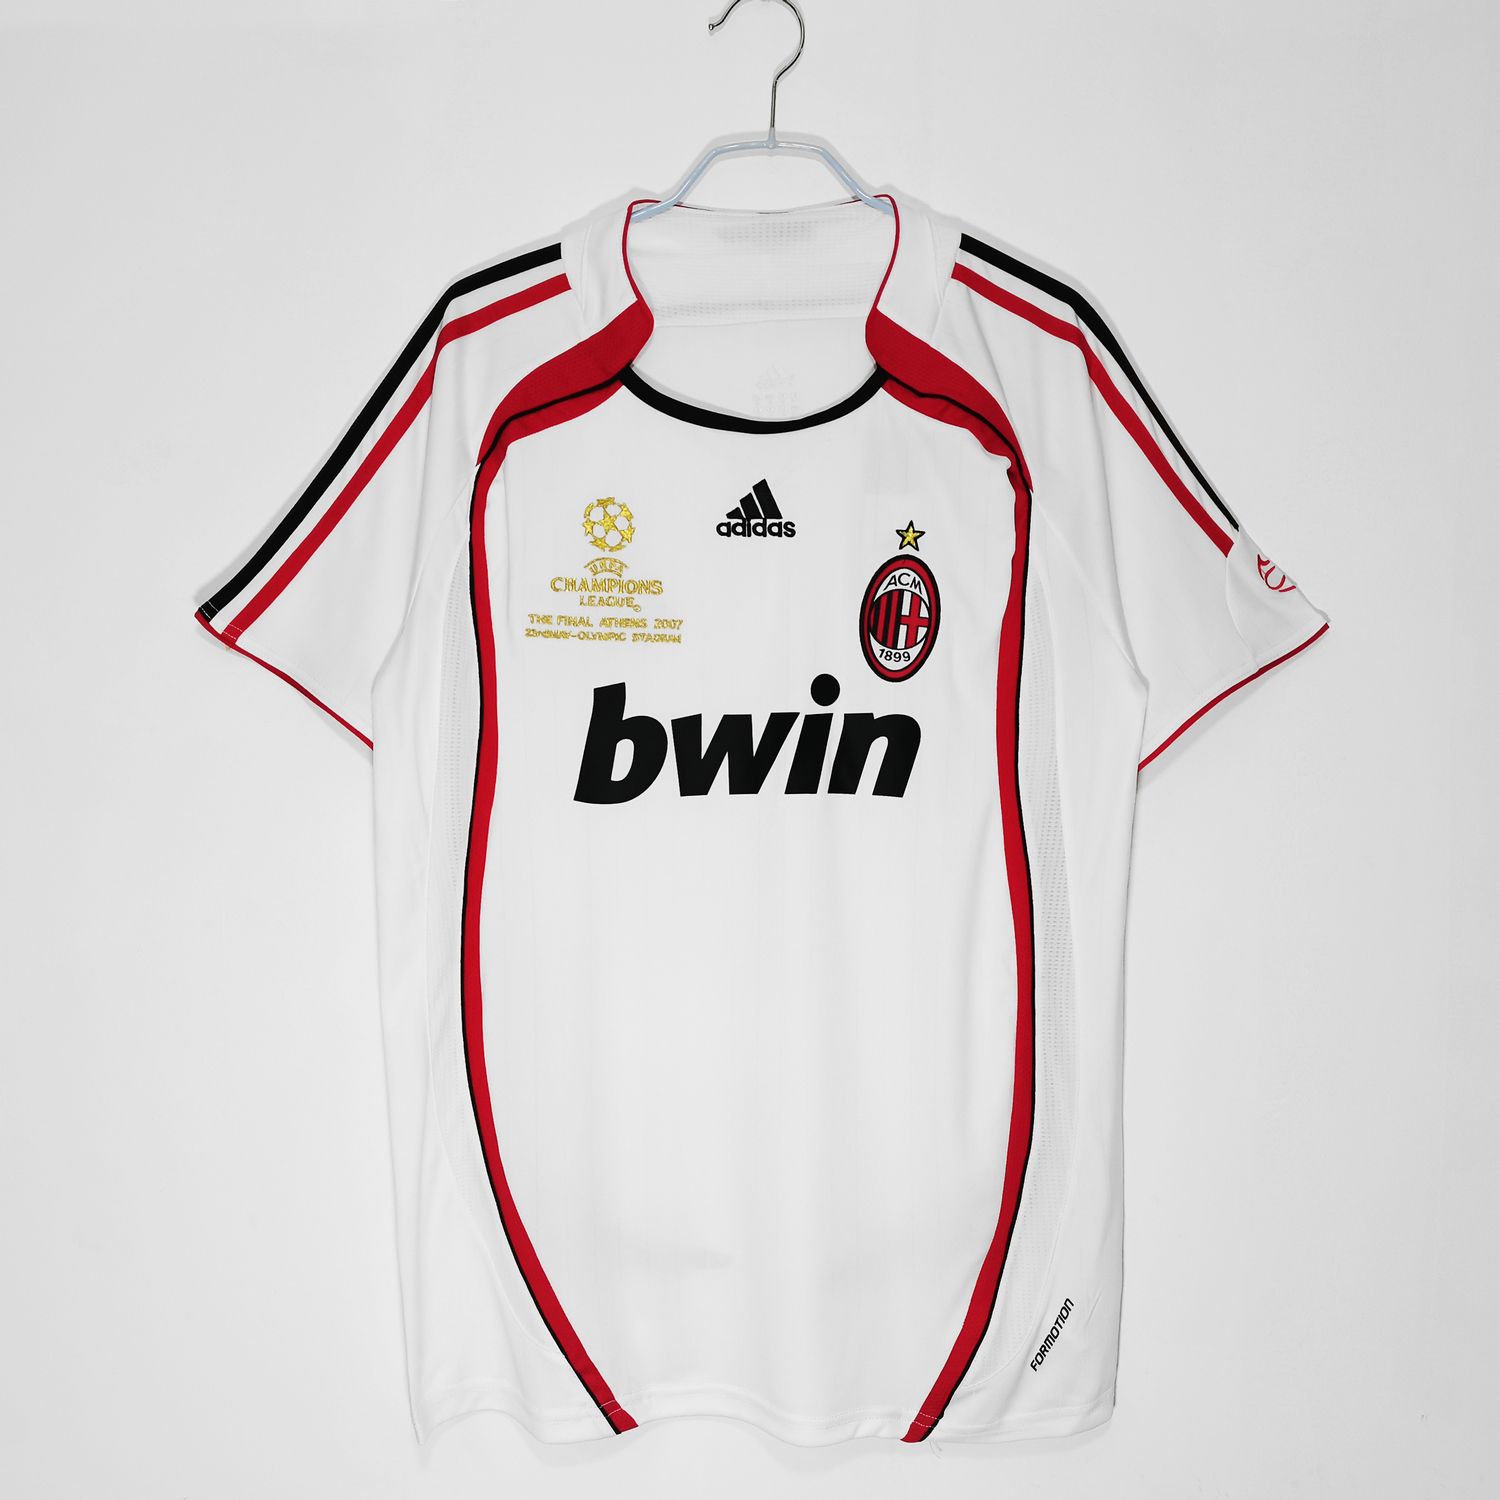 2005-2006 Liverpool Home CL Retro Shirt